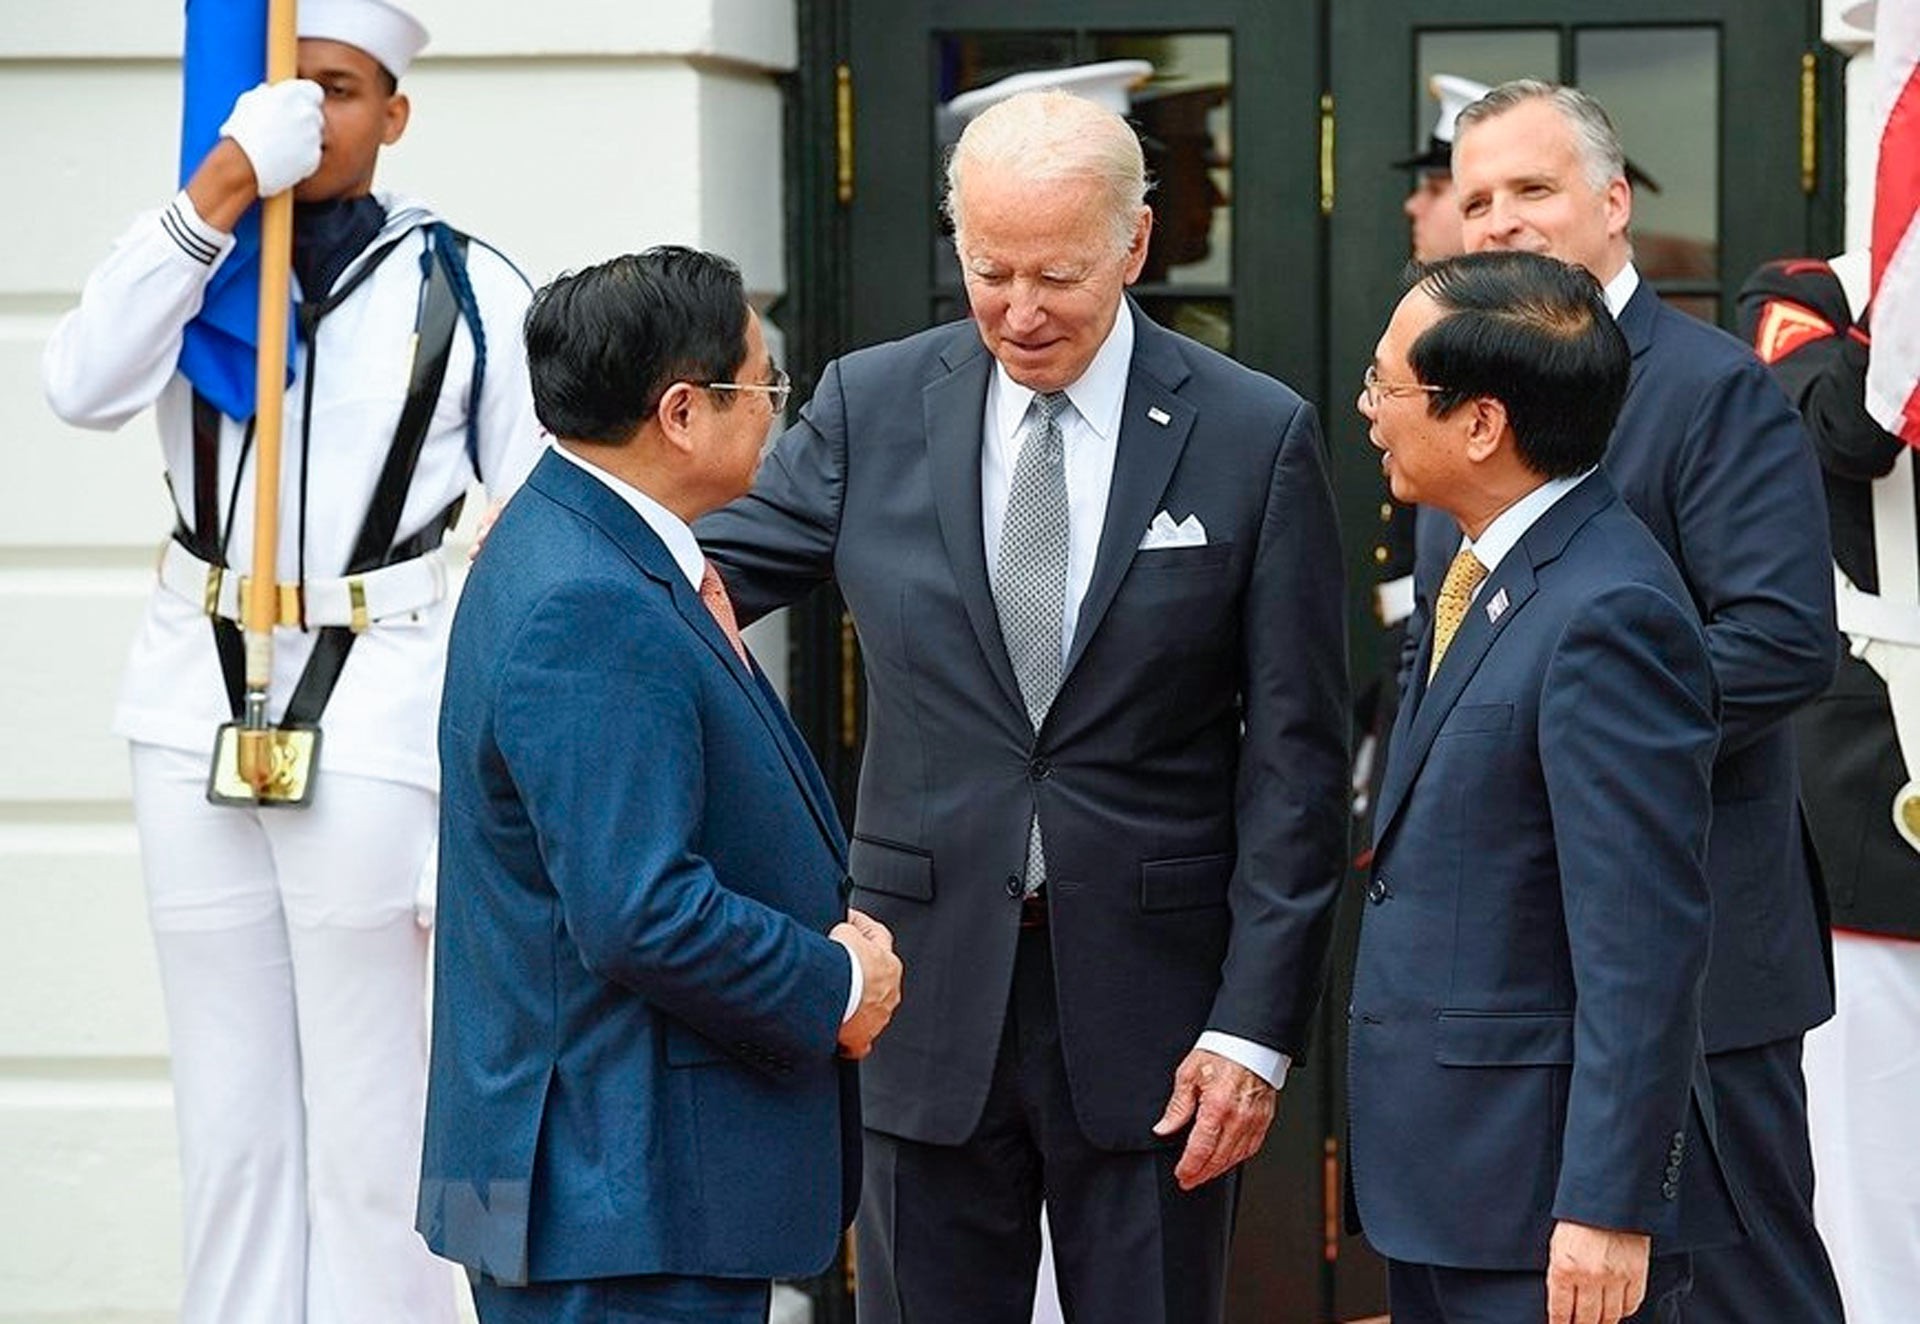 Thủ tướng Chính phủ Phạm Minh Chính đón nhận được nhiều tình cảm từ chính giới, người dân Mỹ trong những chuyến thăm Mỹ năm 2023.